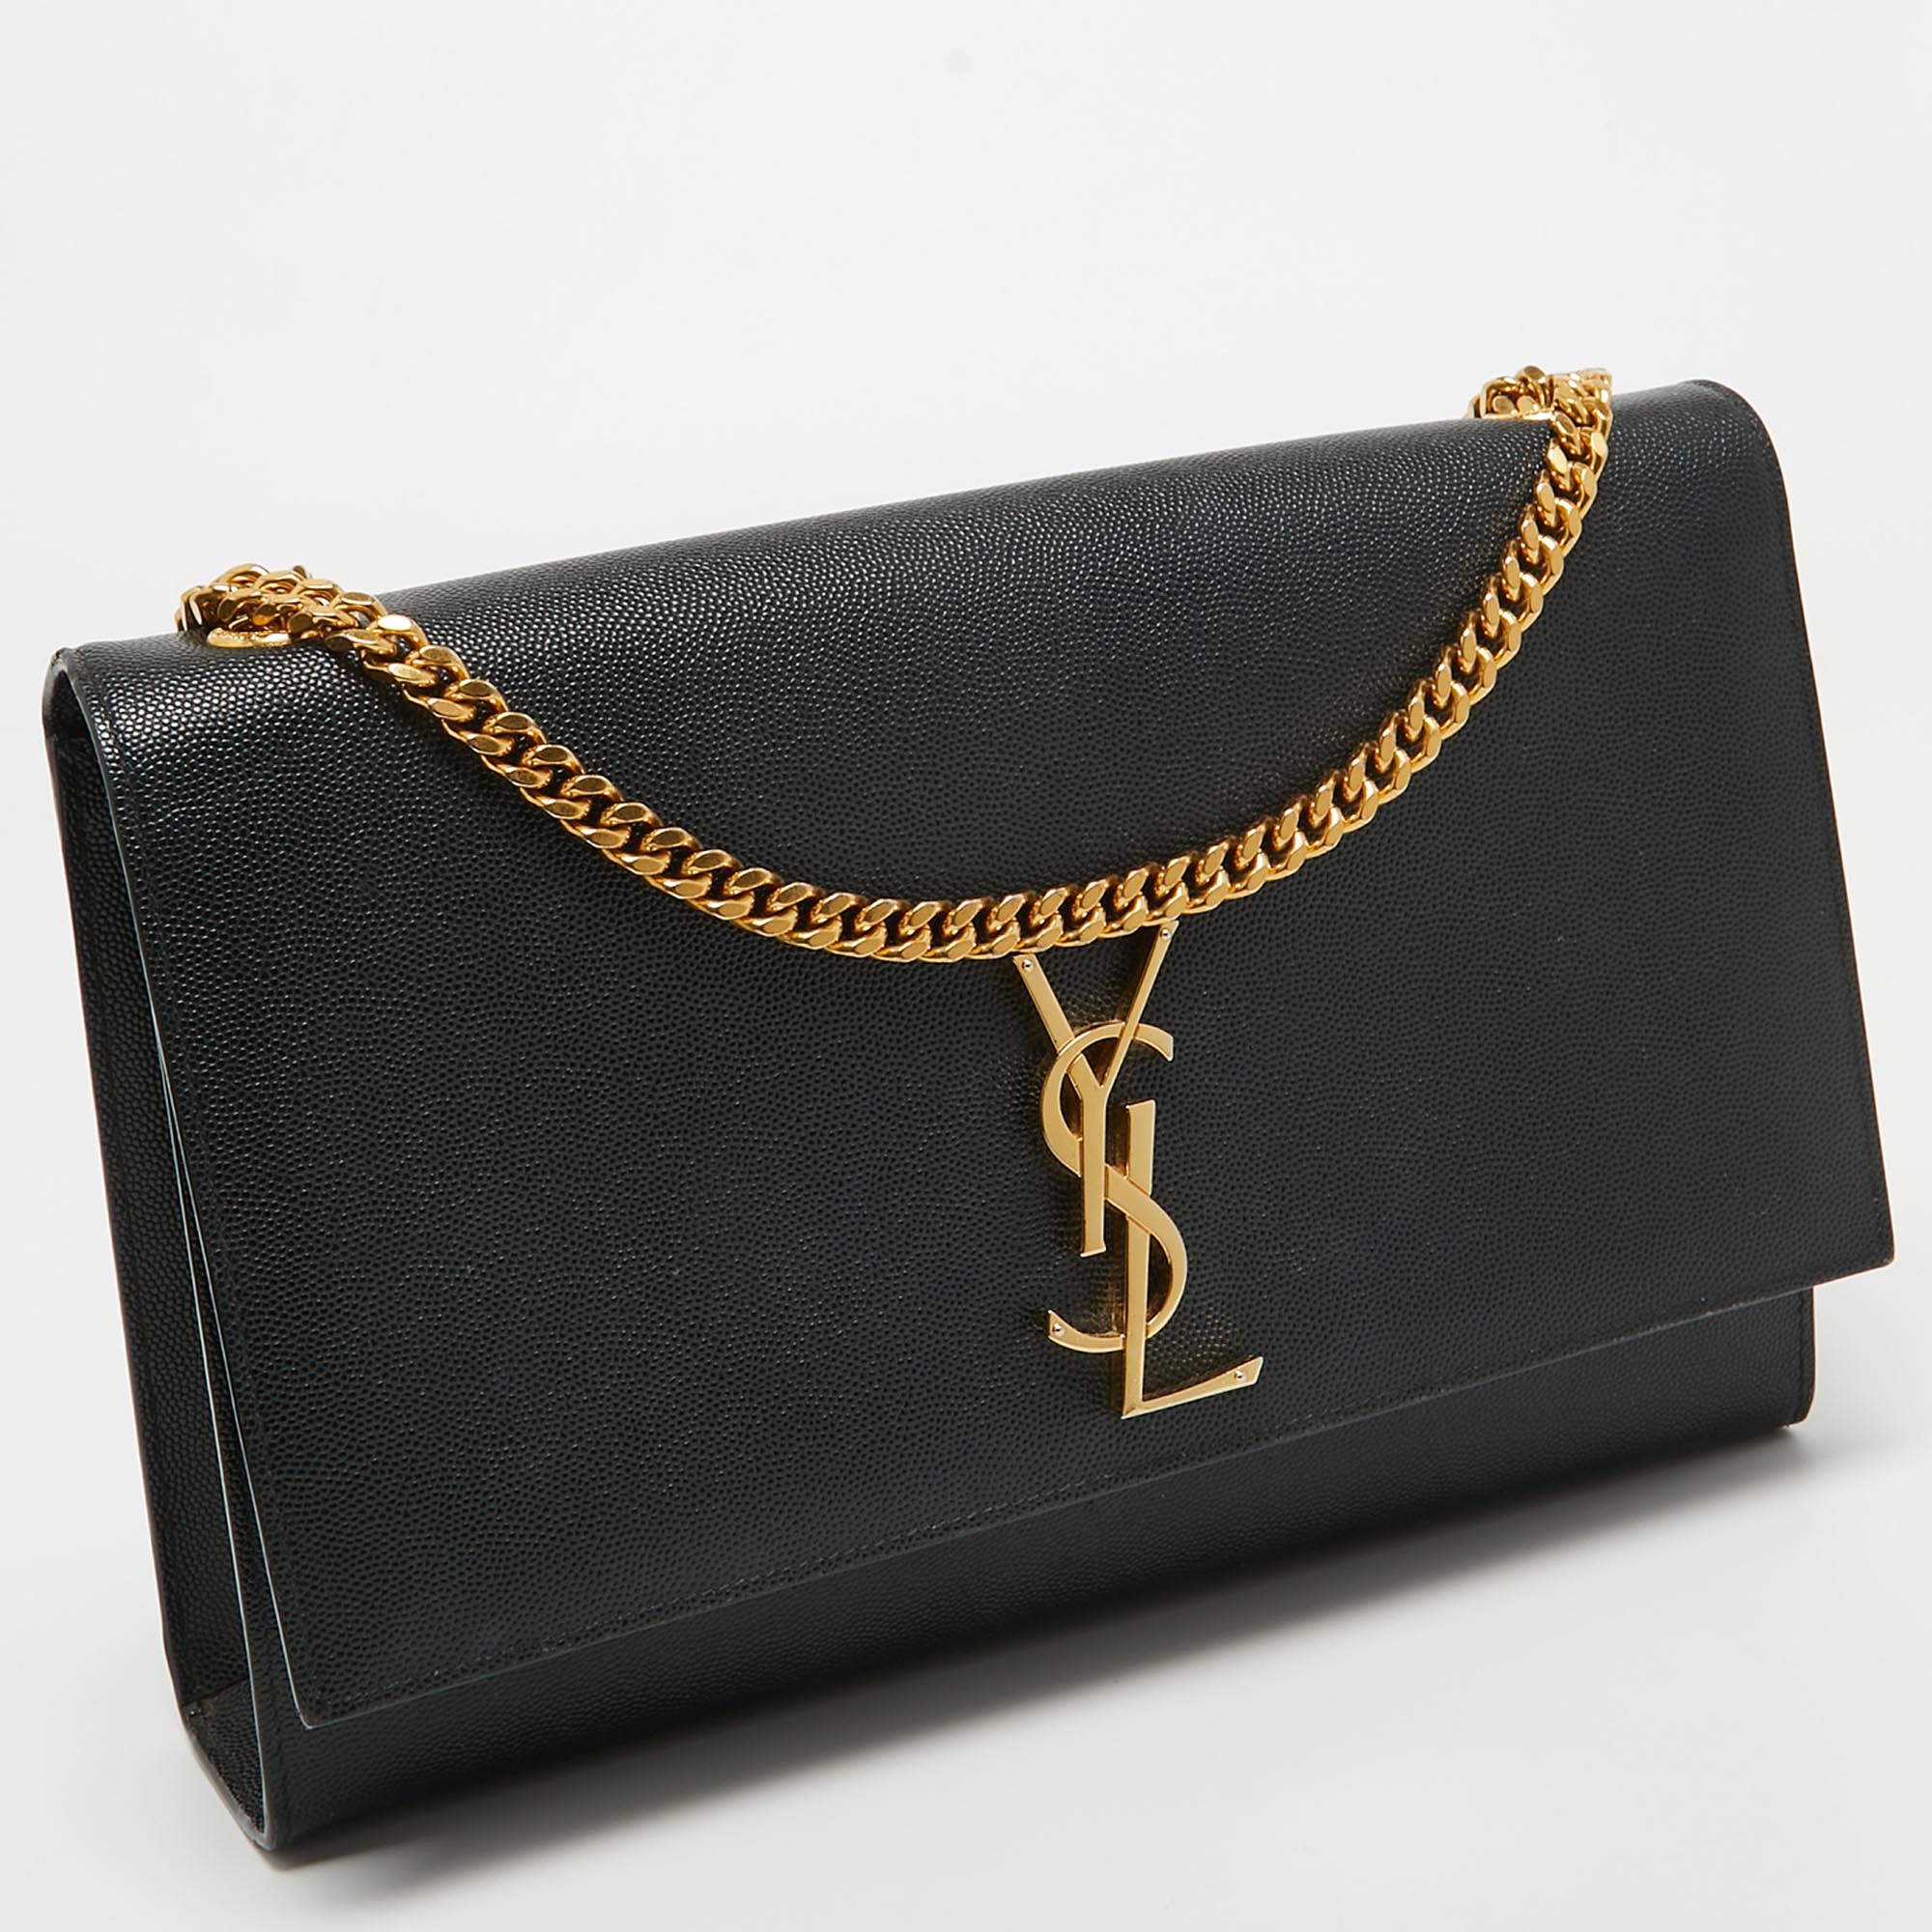 Saint Laurent Black Leather Large Kate Shoulder Bag